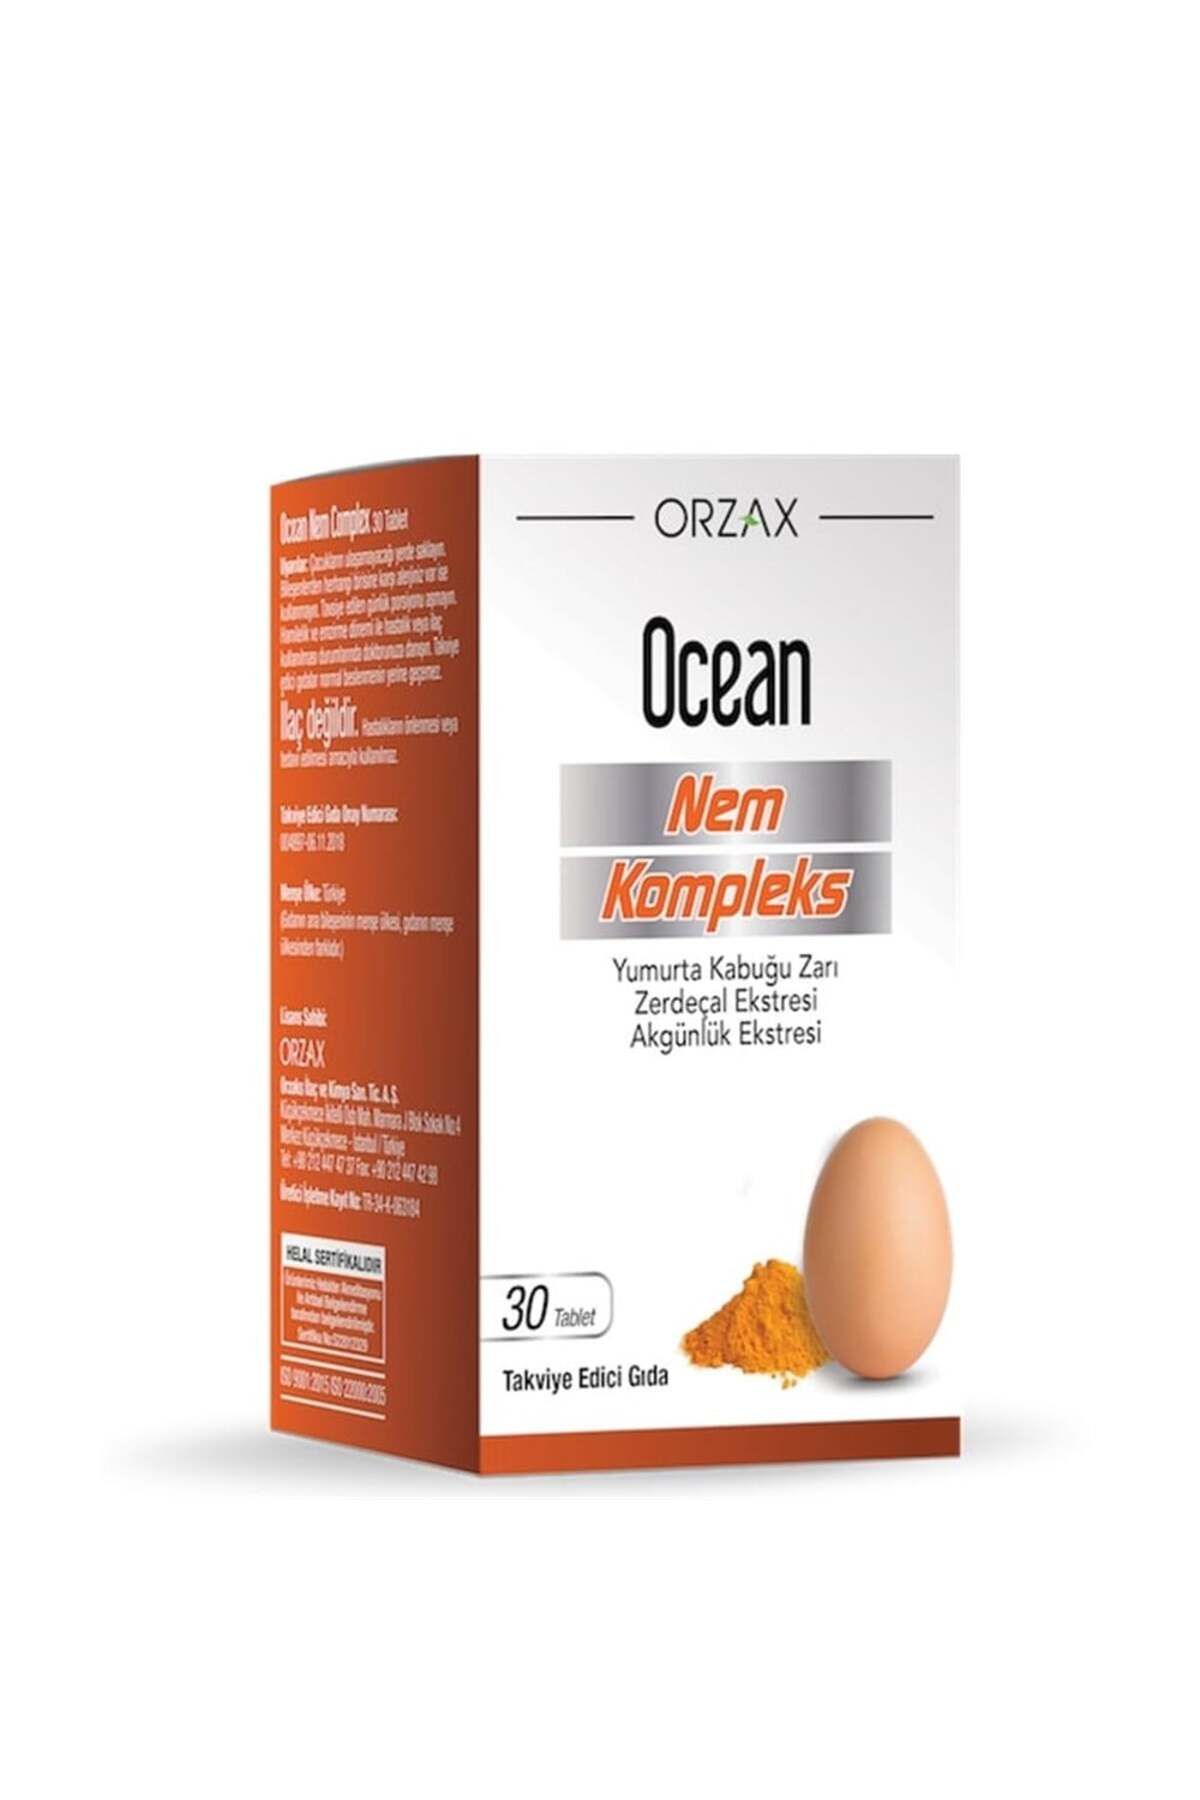 Ocean Nem Kompleks Yumurta Kabuğu Zarı Akgünlük ve zerdeçal içeren 30 Tablet Bitkisel Takviye....